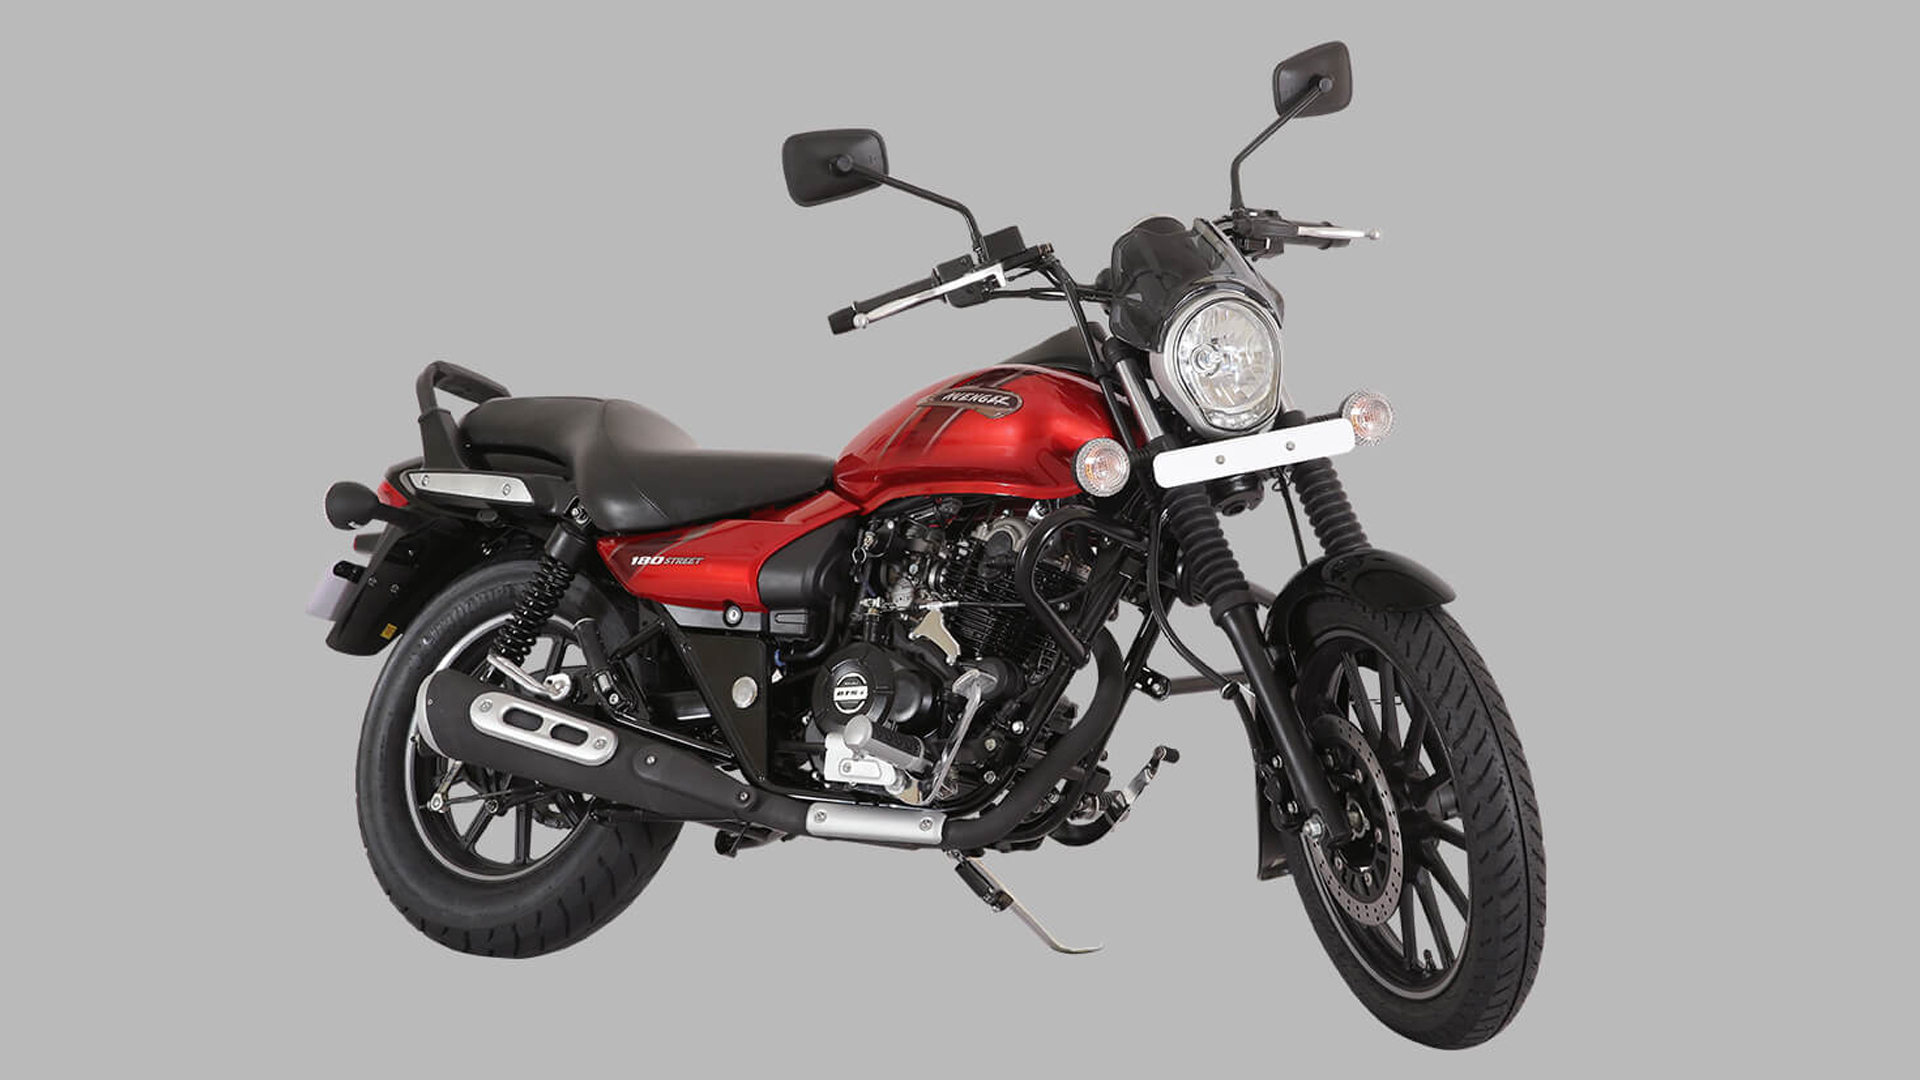 Avenger Bike New Model 2019 Price In India